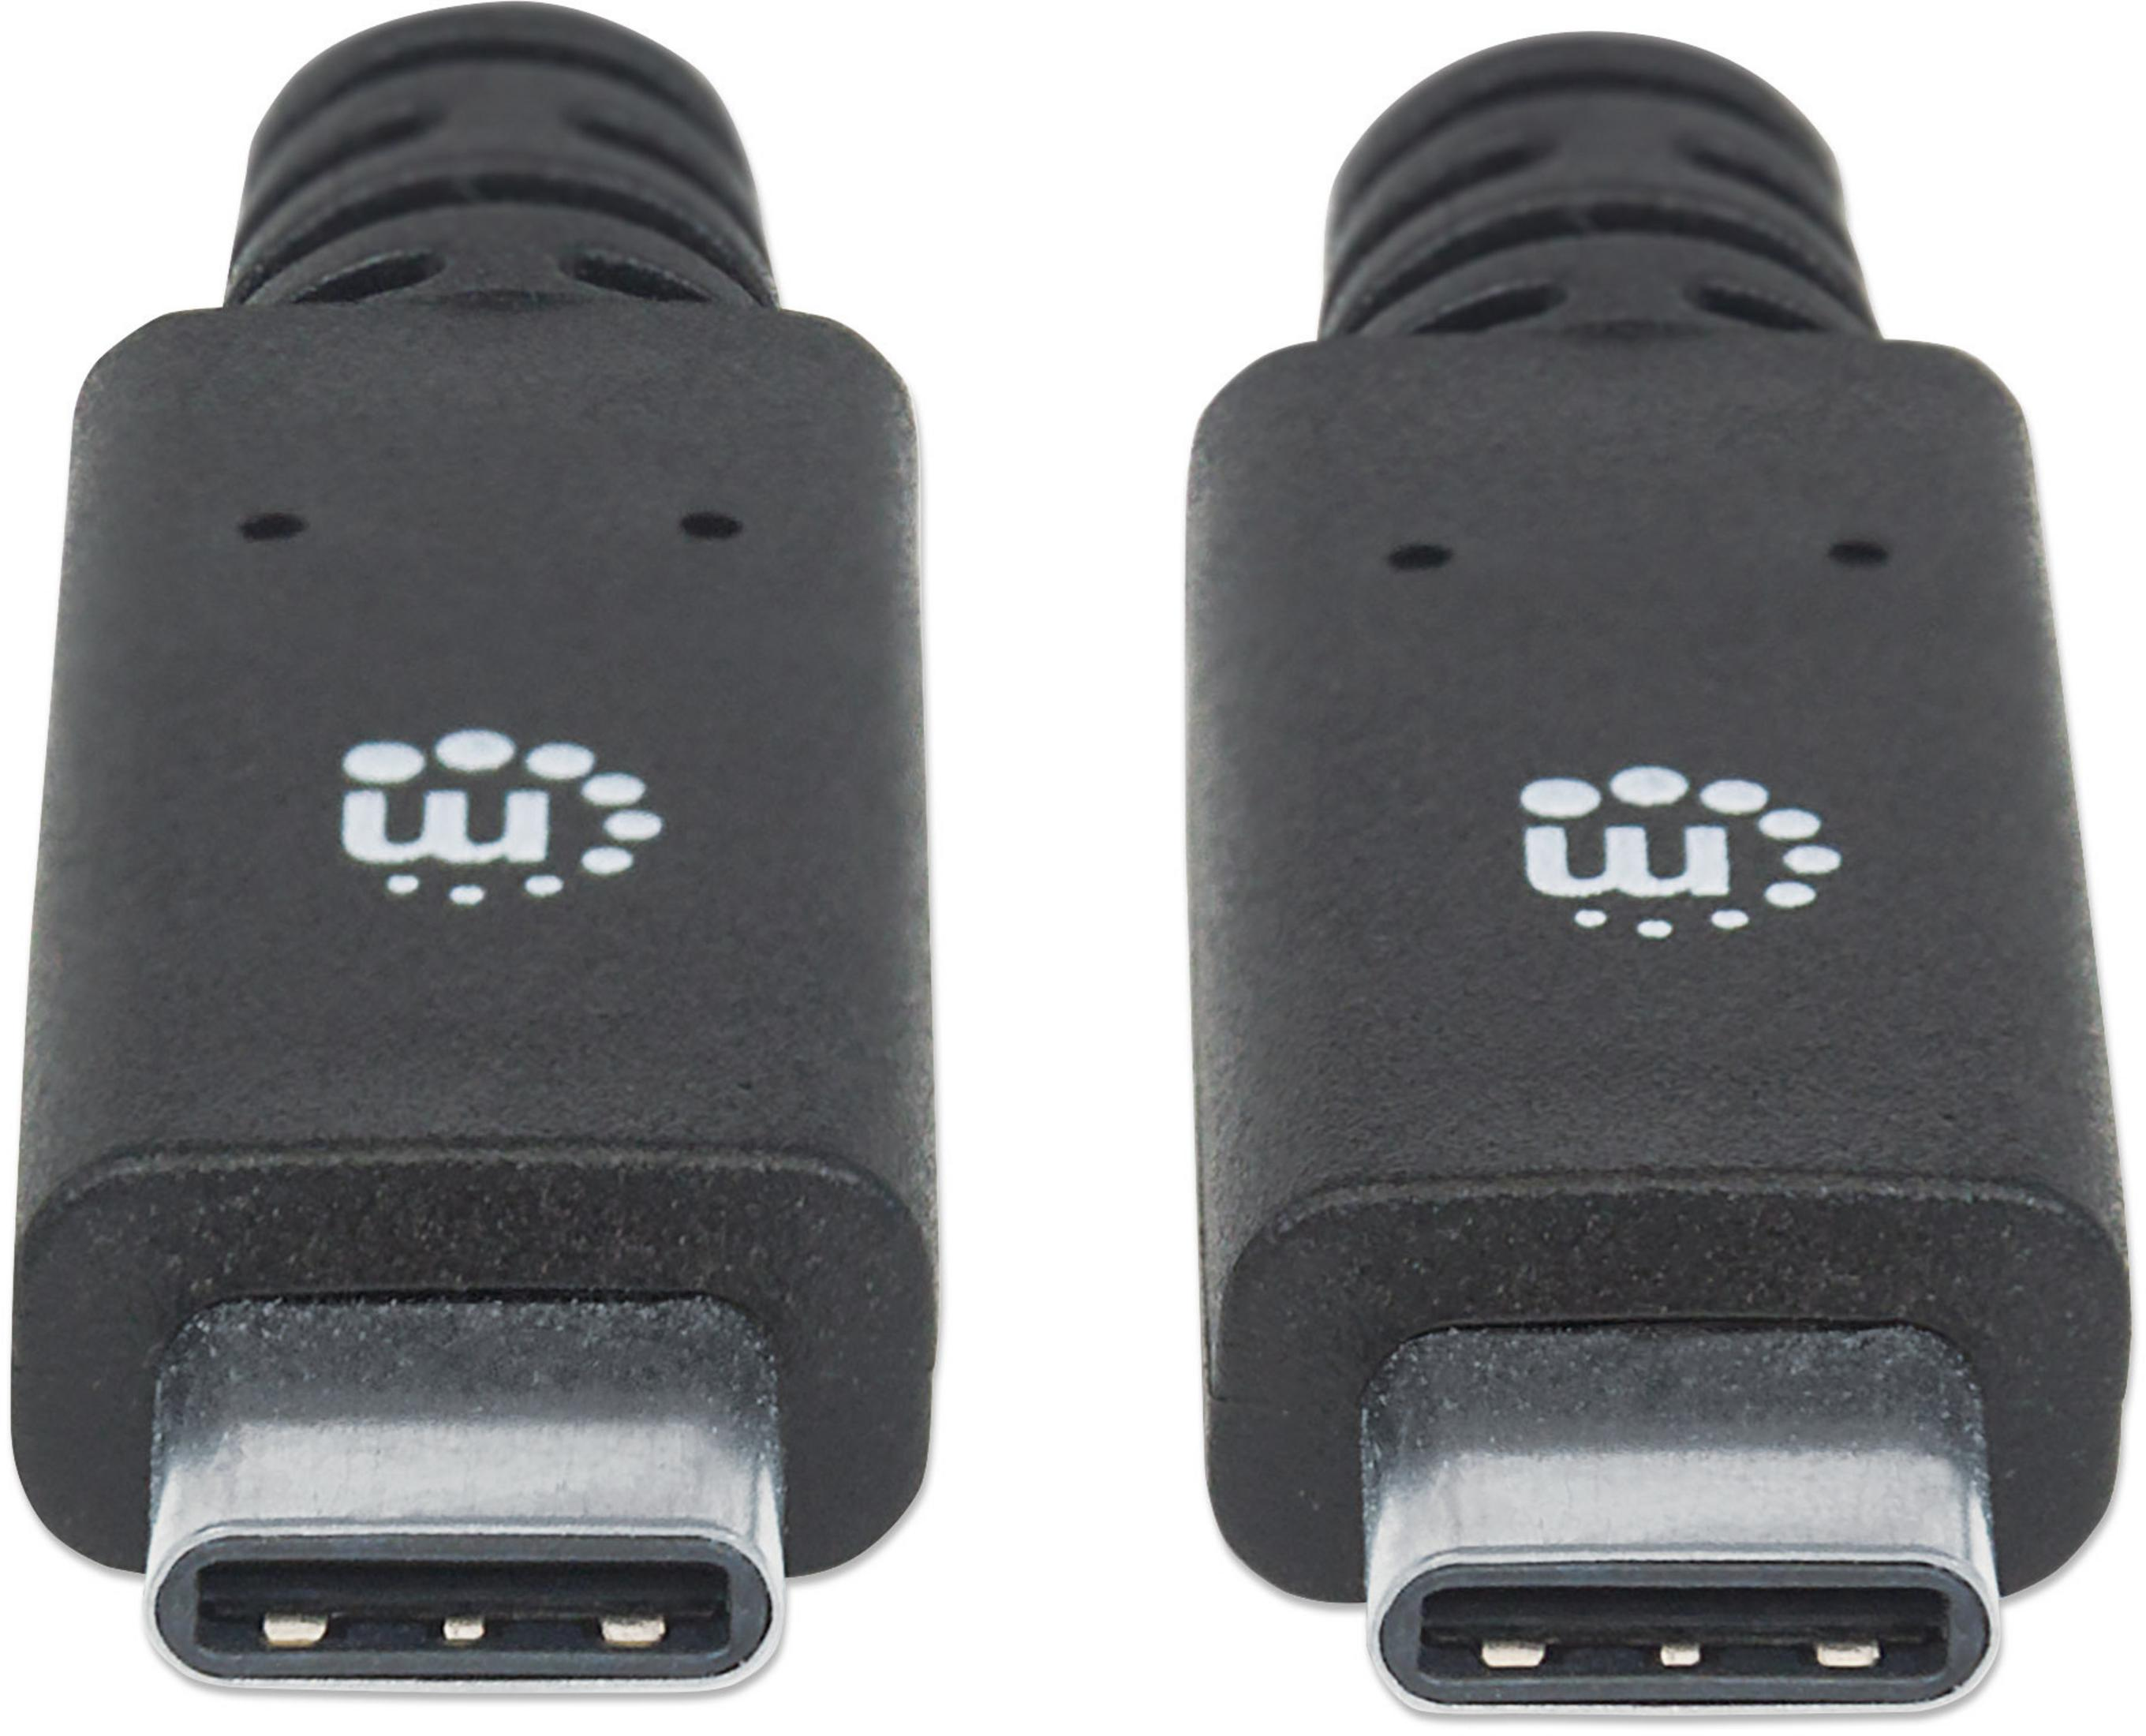 1 USB USB MANHATTAN MANHATTAN Gen 3.2 USB Kabel Anschlusskabel Sonstiges Typ-C